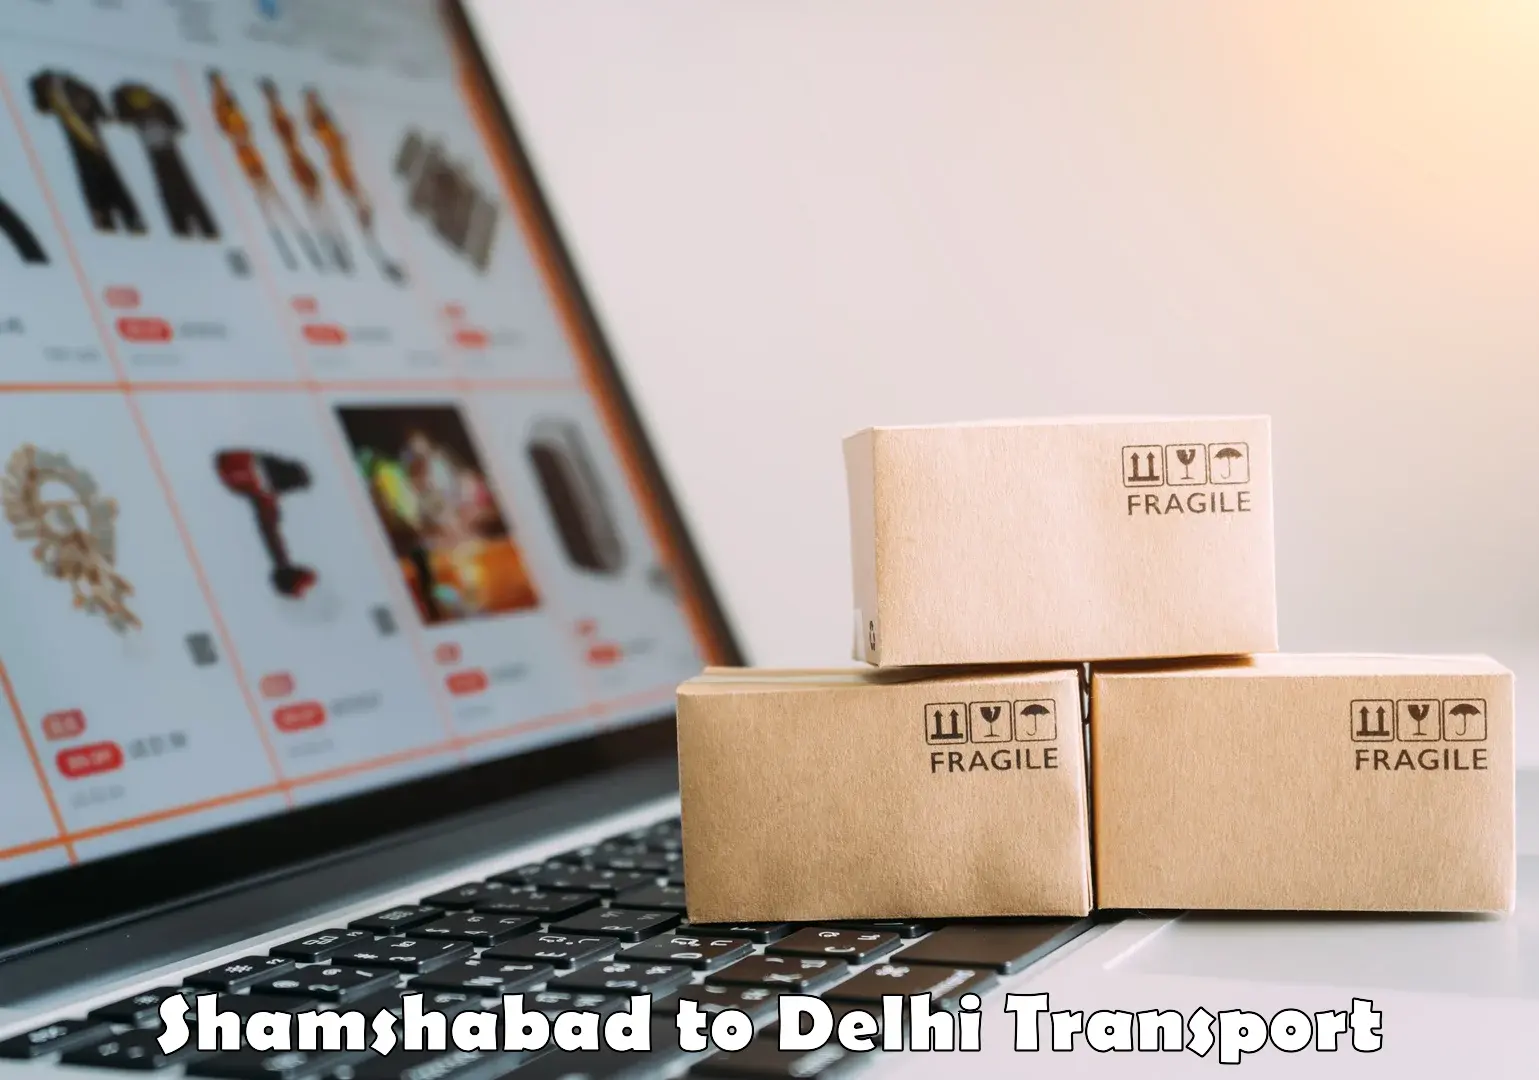 Furniture transport service Shamshabad to Indraprastha